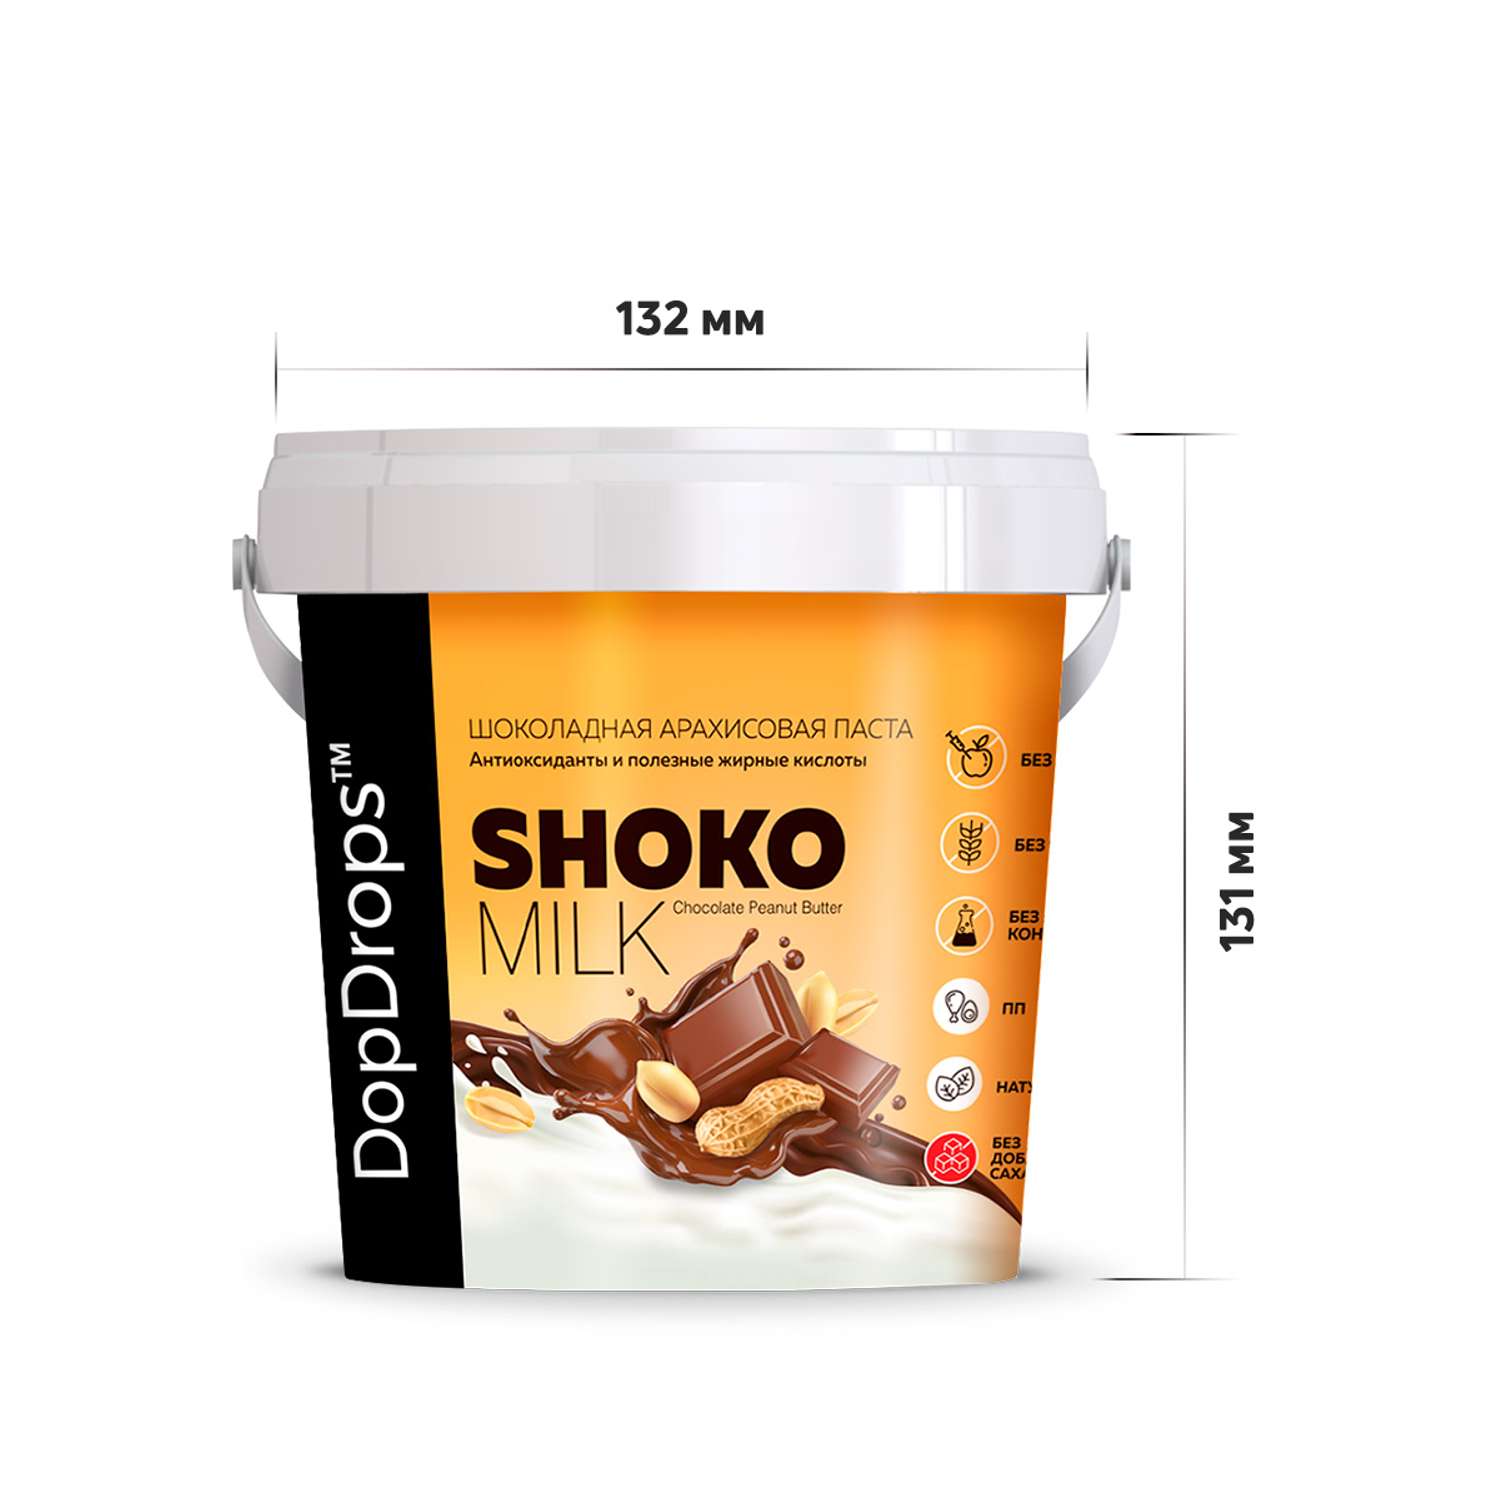 Шоколадная ореховая паста DopDrops Shoko Milk арахисовая без сахара 1000 г - фото 5